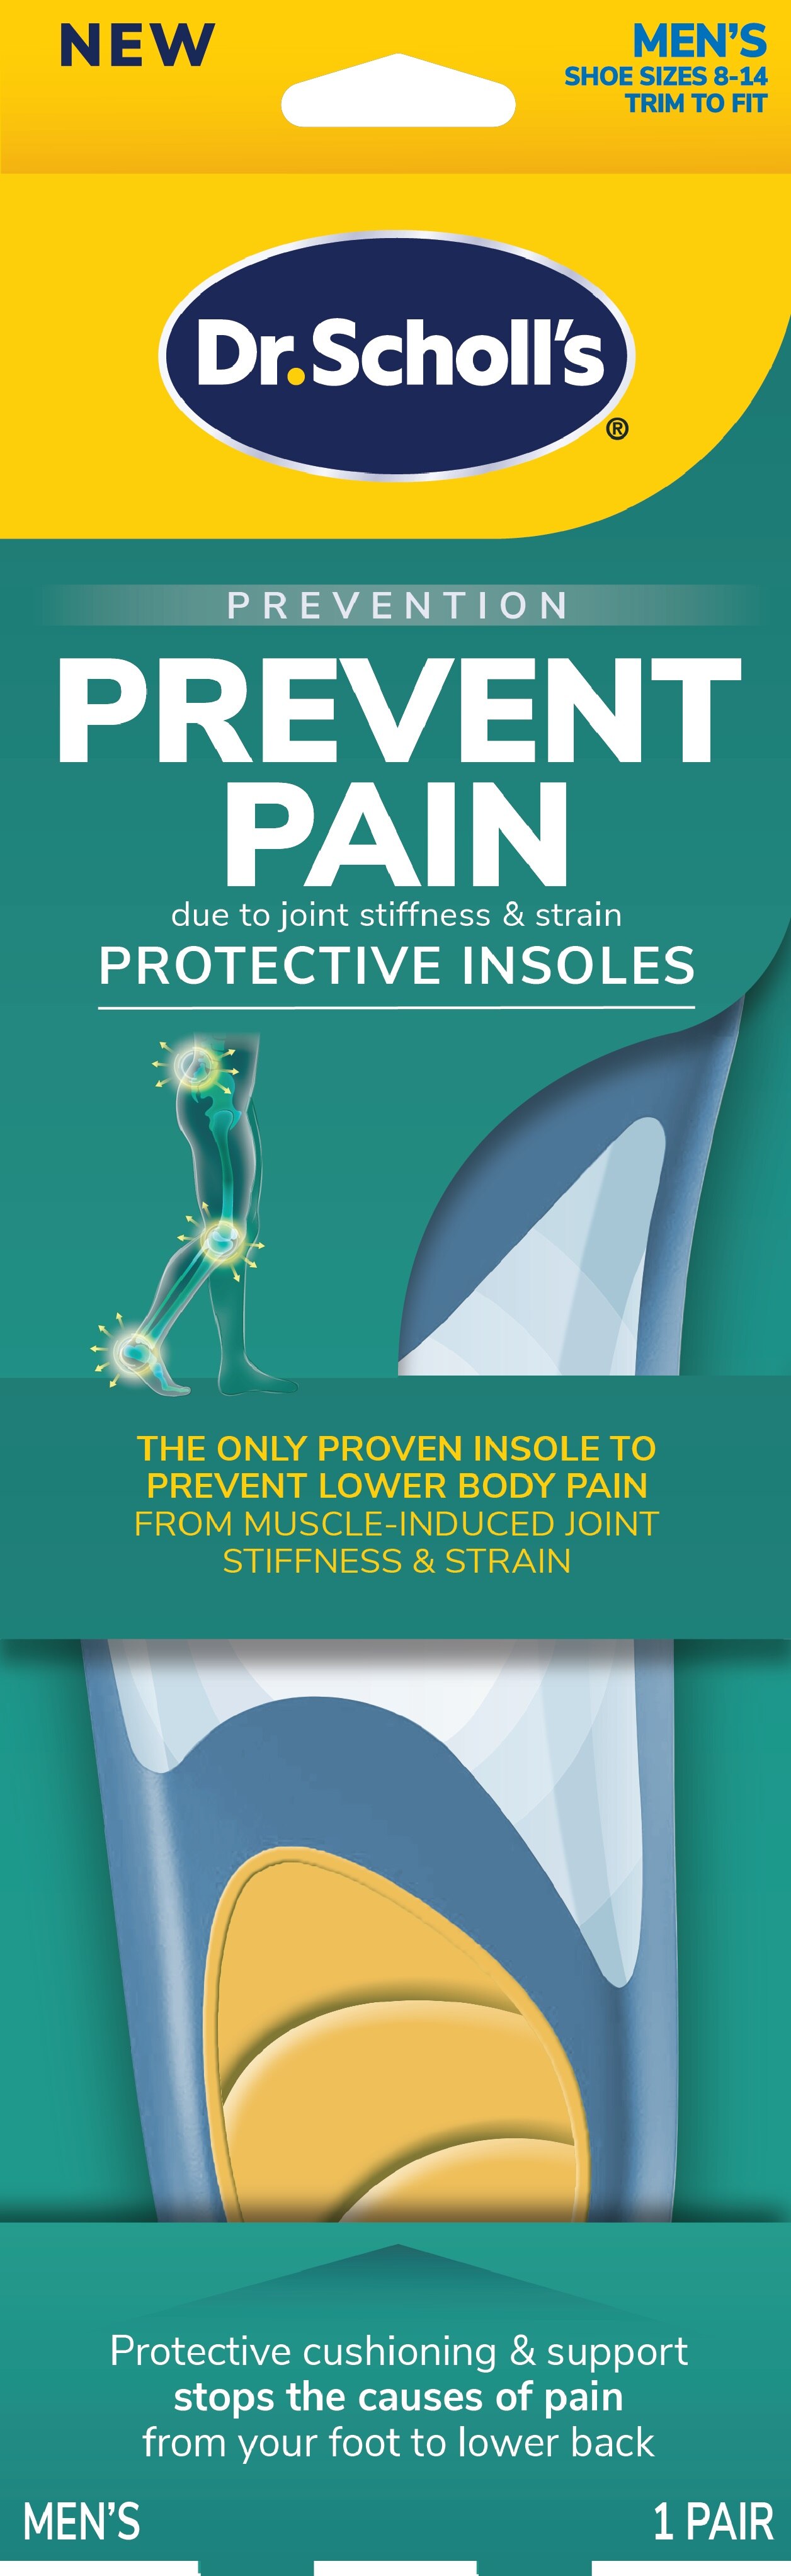 Dr Scholl's Dr. Scholl's Prevent Pain Lower Body Protective Insoles, Men's 8-14, 1 Pair , CVS